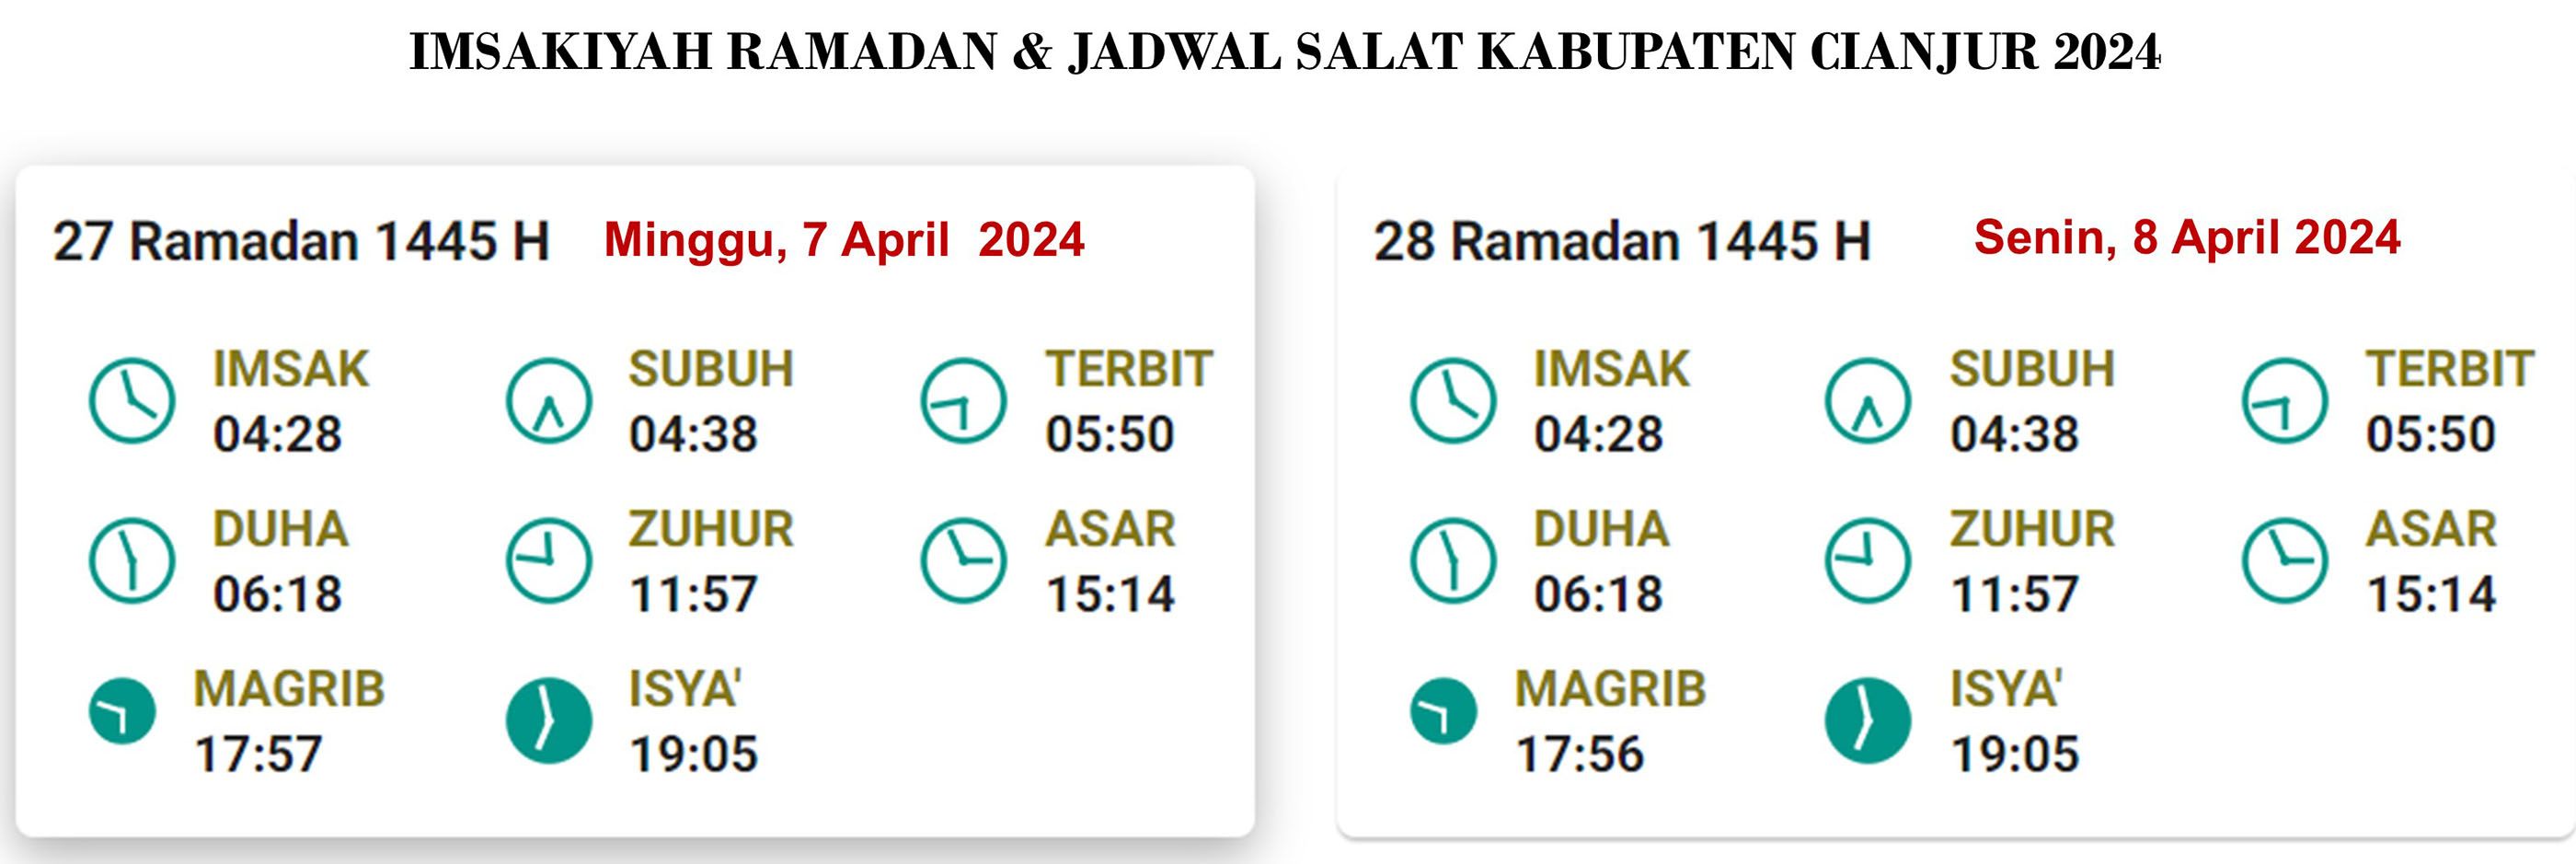 Cianjur: Jadwal Puasa dan Salat, 7April 2024/27 Ramadan 1445 H;